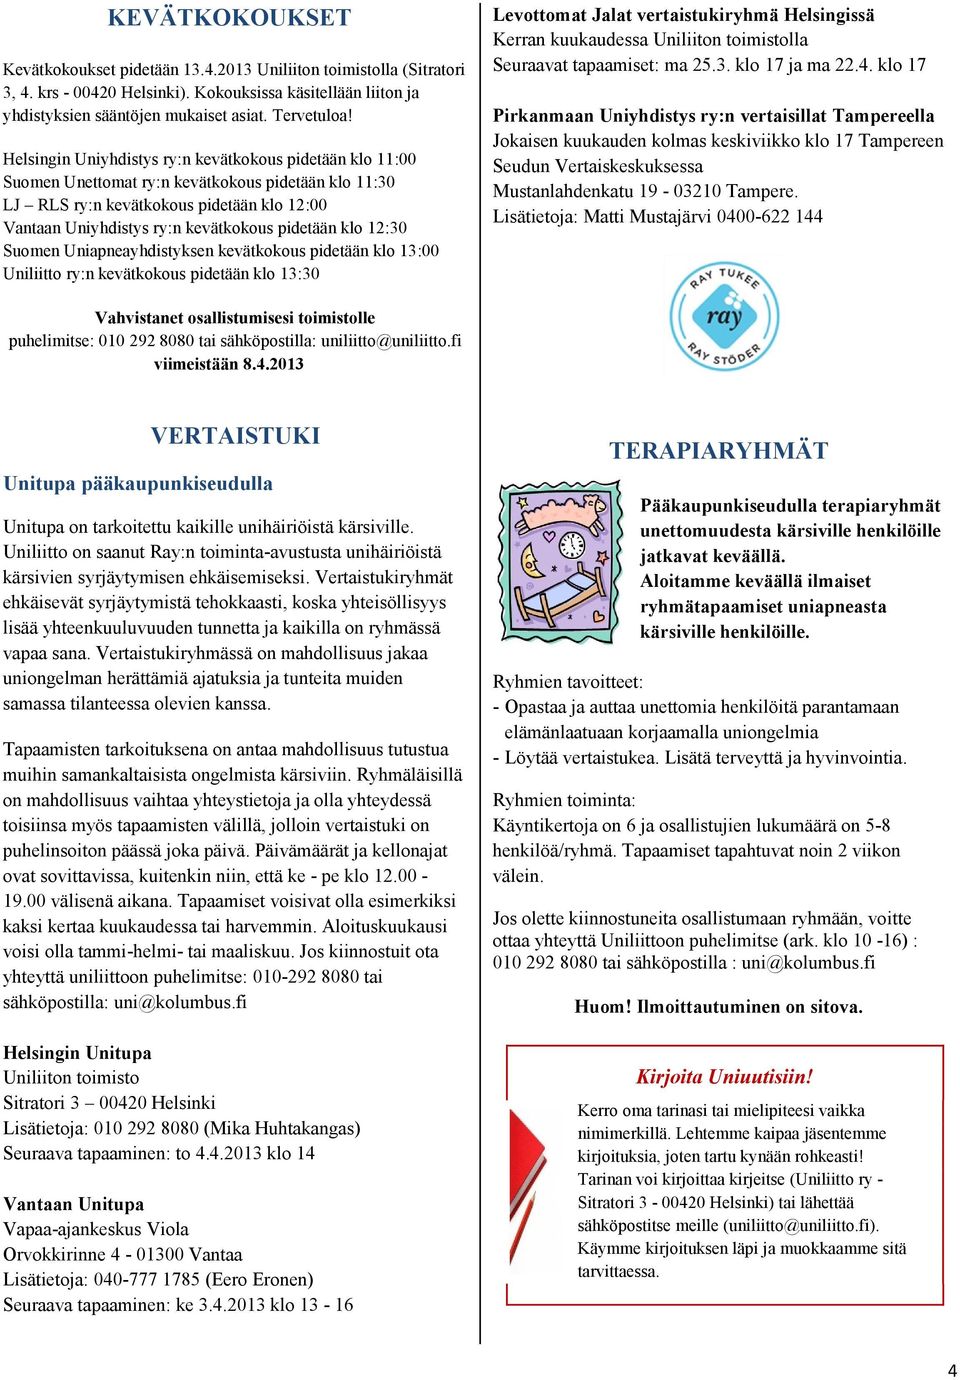 klo 12:30 Suomen Uniapneayhdistyksen kevätkokous pidetään klo 13:00 Uniliitto ry:n kevätkokous pidetään klo 13:30 Levottomat Jalat vertaistukiryhmä Helsingissä Kerran kuukaudessa Uniliiton